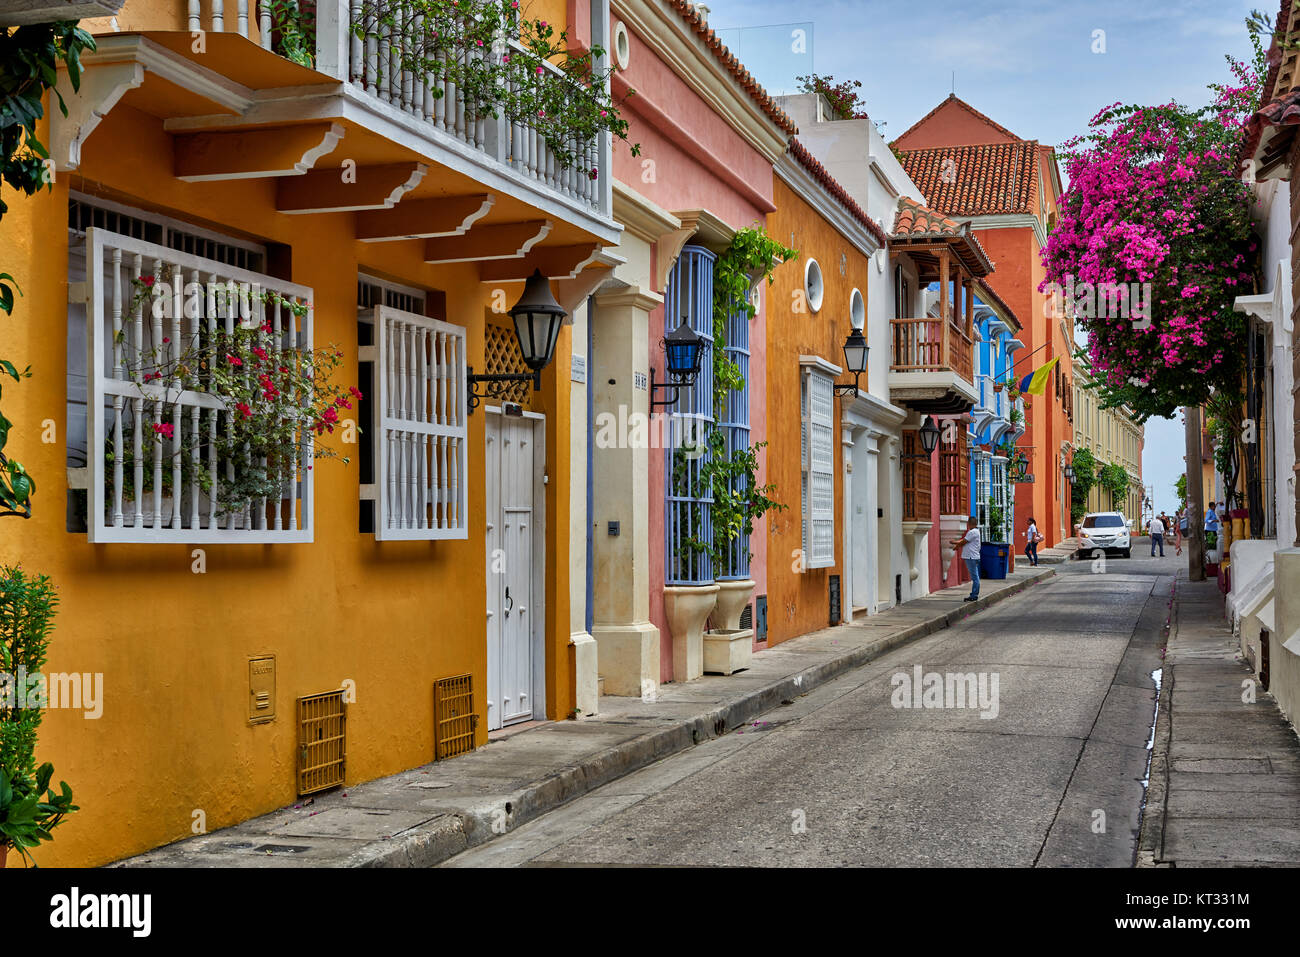 Façades colorées typiques avec des balcons et des fleurs de maisons à Cartagena de Indias, Colombie, Amérique du Sud Banque D'Images